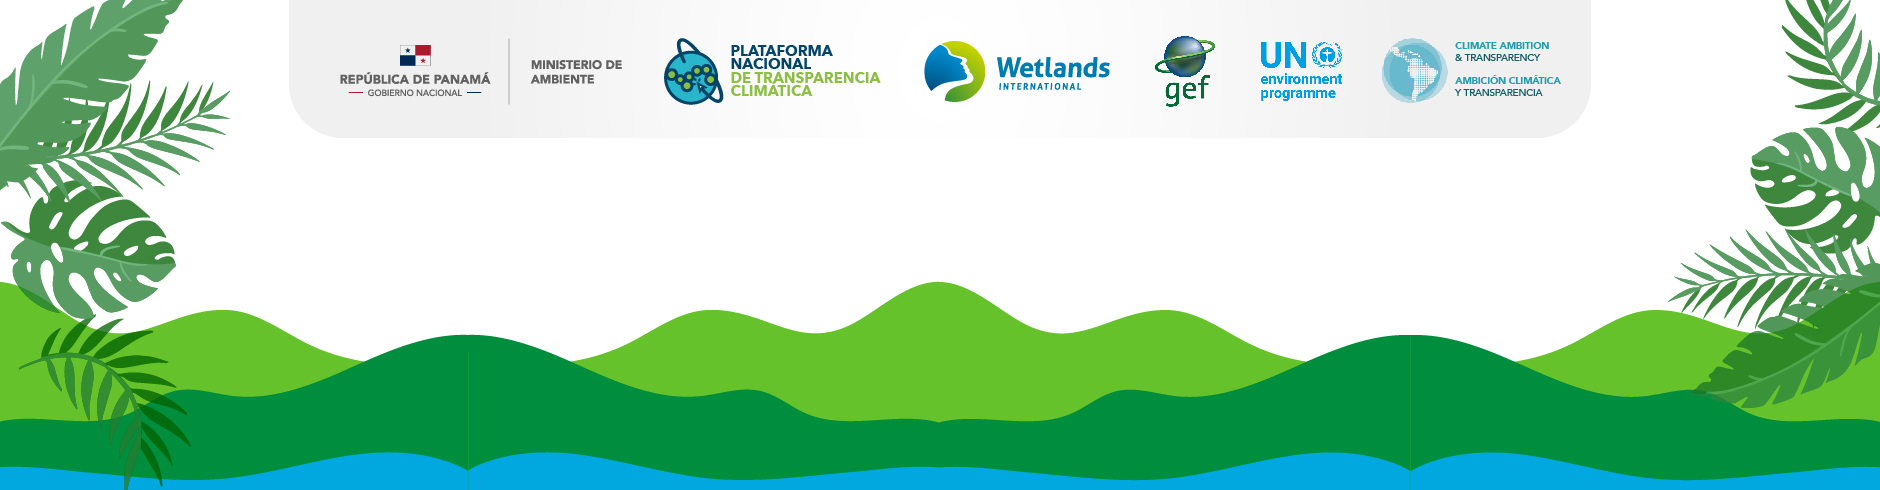 Desarrollo del Marco Nacional para la Transparencia Climática de Panamá. Iniciativa de Creación de Capacidades para la Transparencia Climática (CBIT)